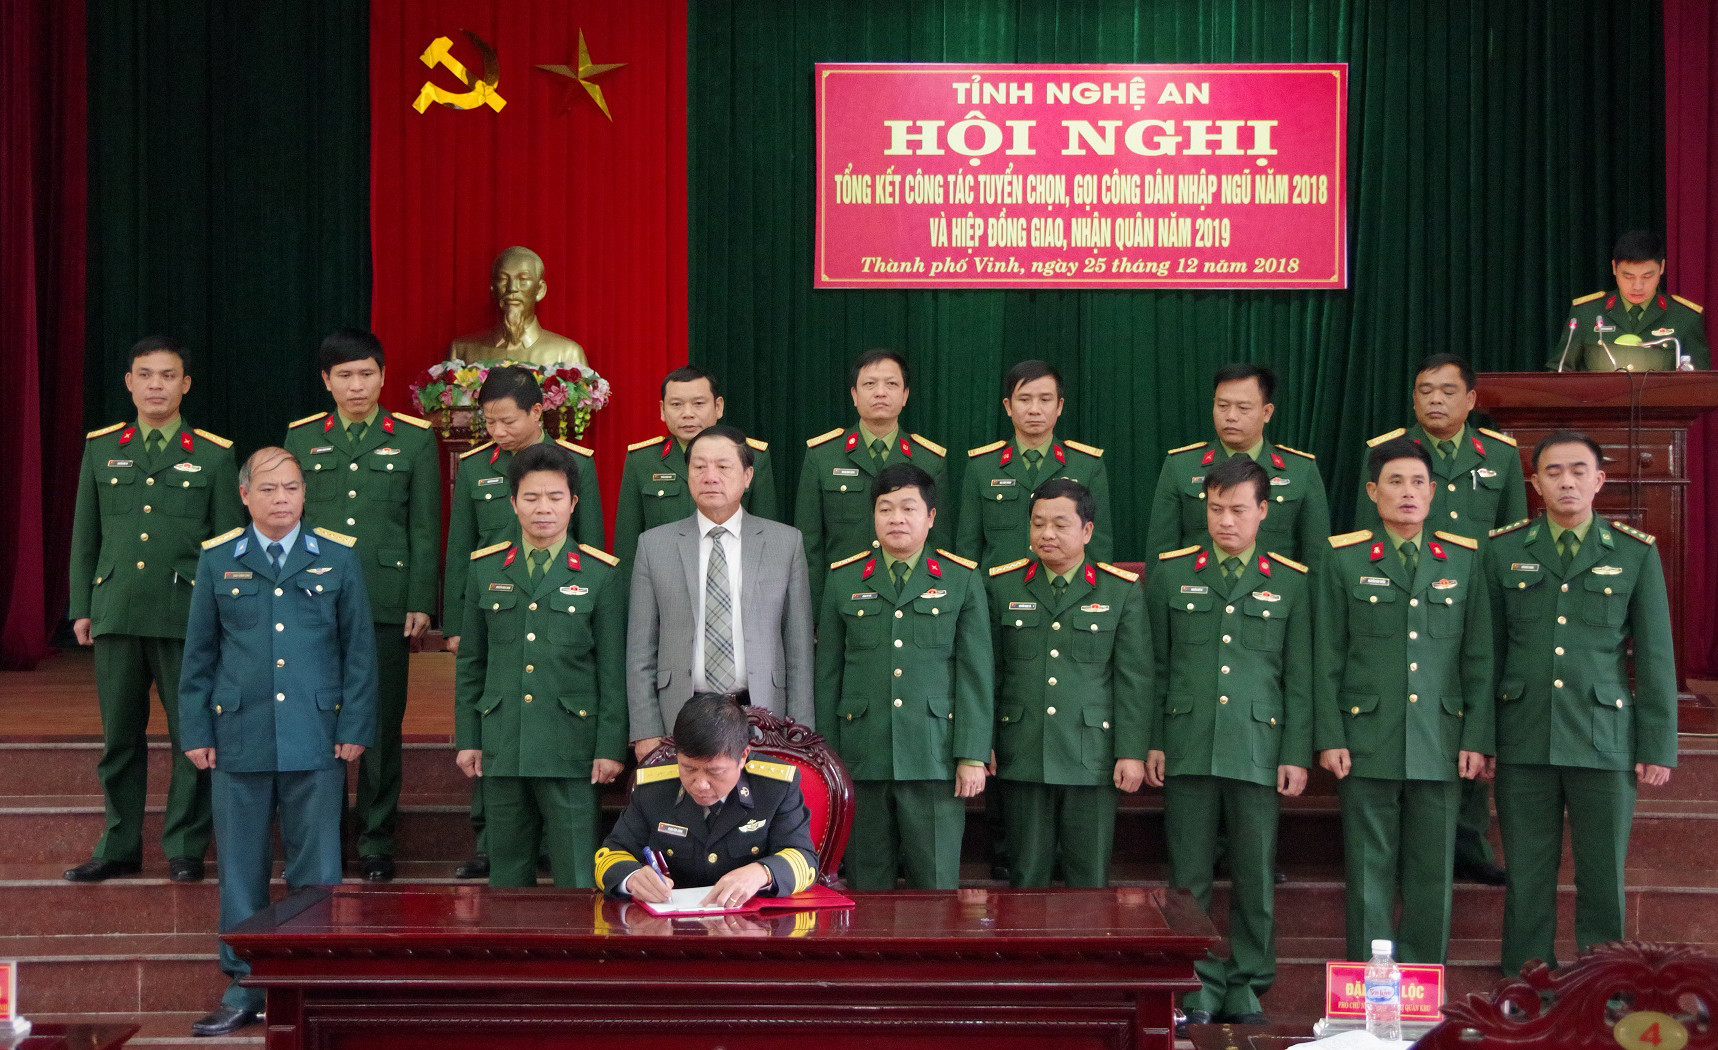 Các đơn vị nhận quân của Bộ Quốc phòng và Quân khu 4 ký kết hiệp đồng giao nhận quân năm 2019 với tỉnh Nghệ An. Ảnh: Trọng Kiên